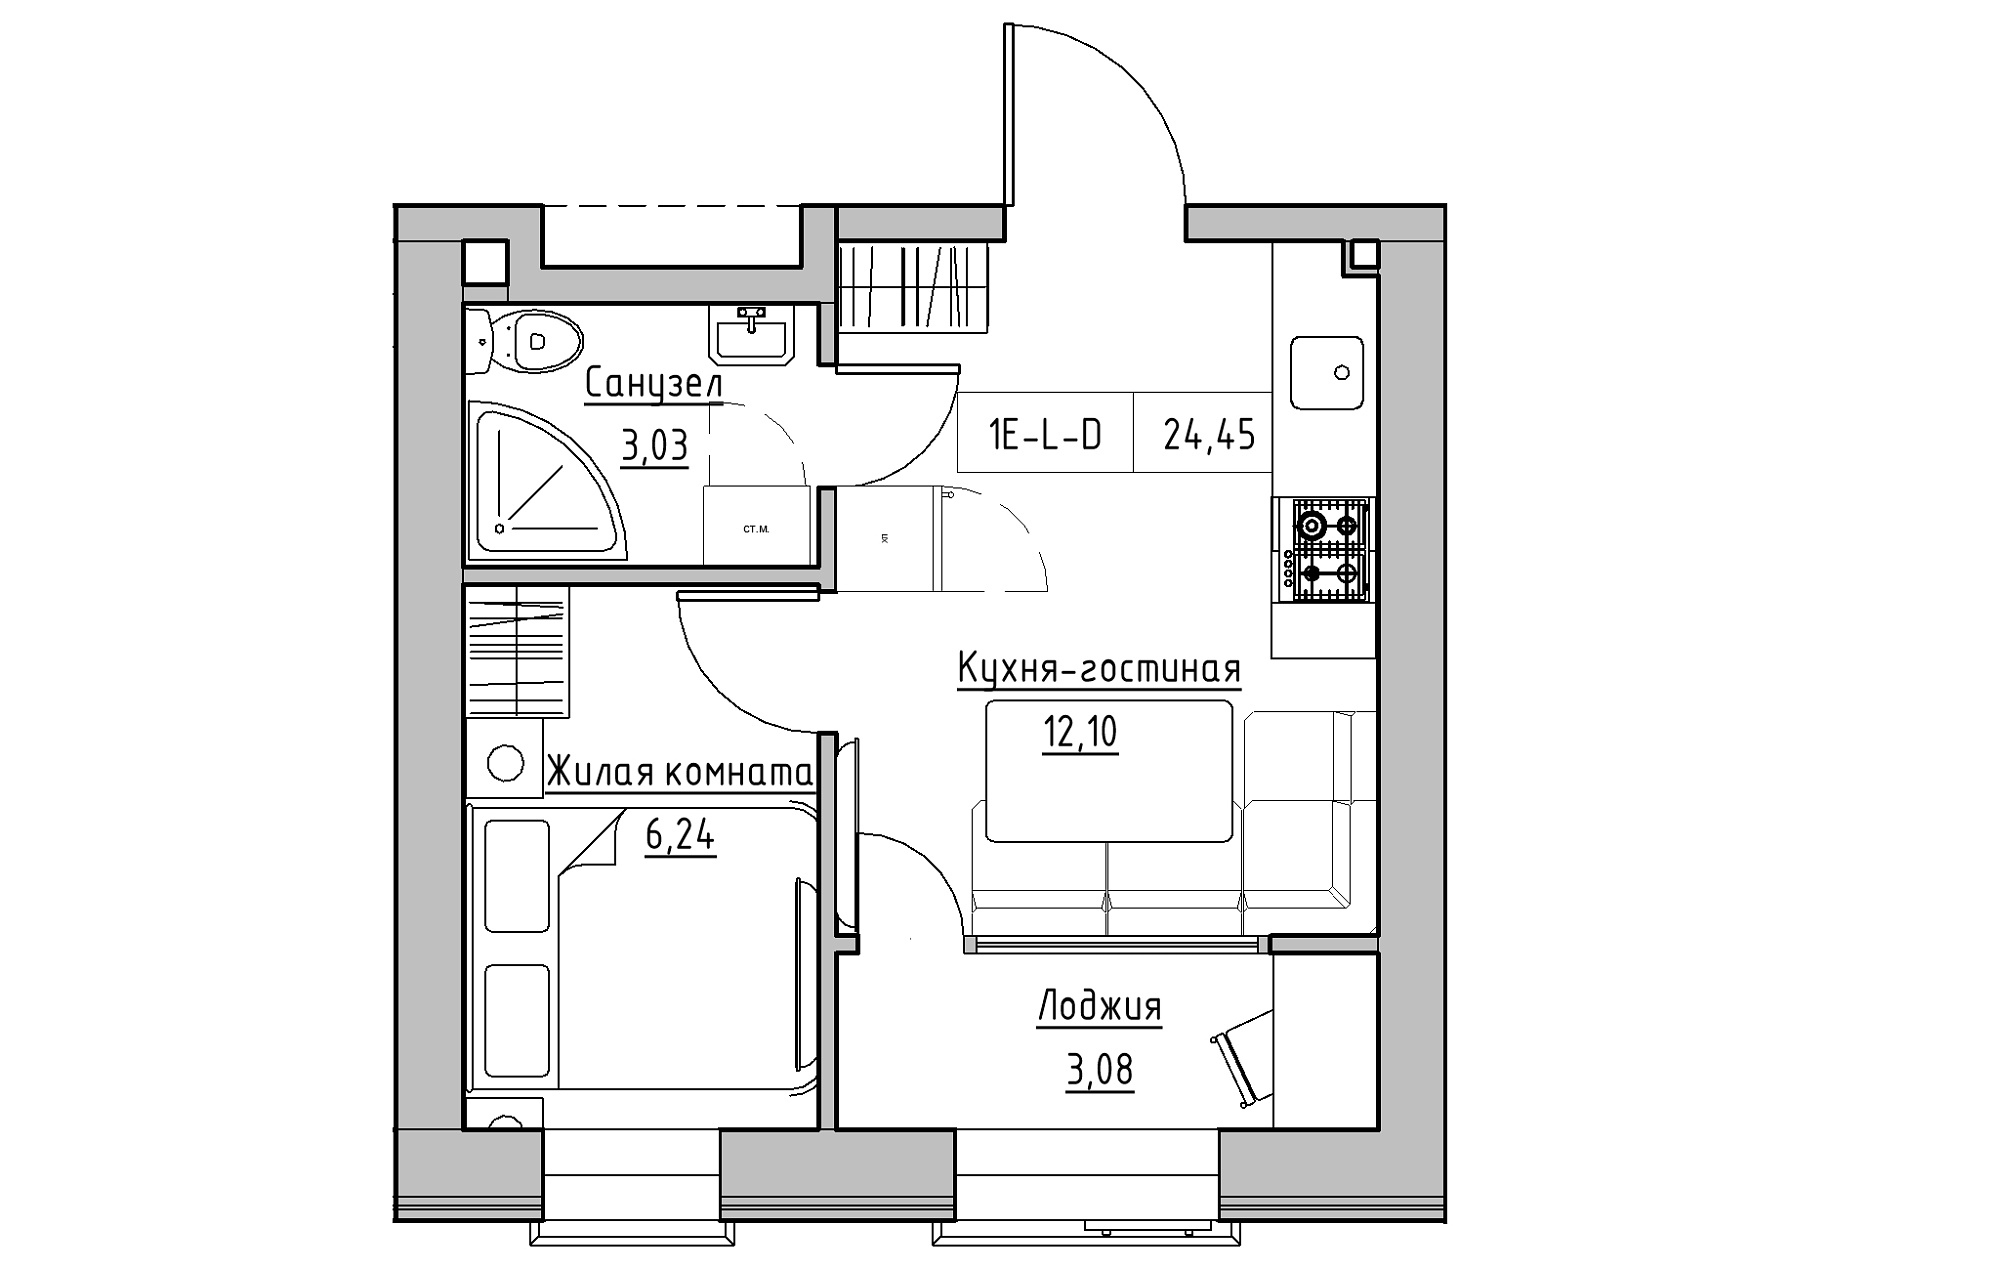 Планування 1-к квартира площею 24.45м2, KS-018-02/0002.